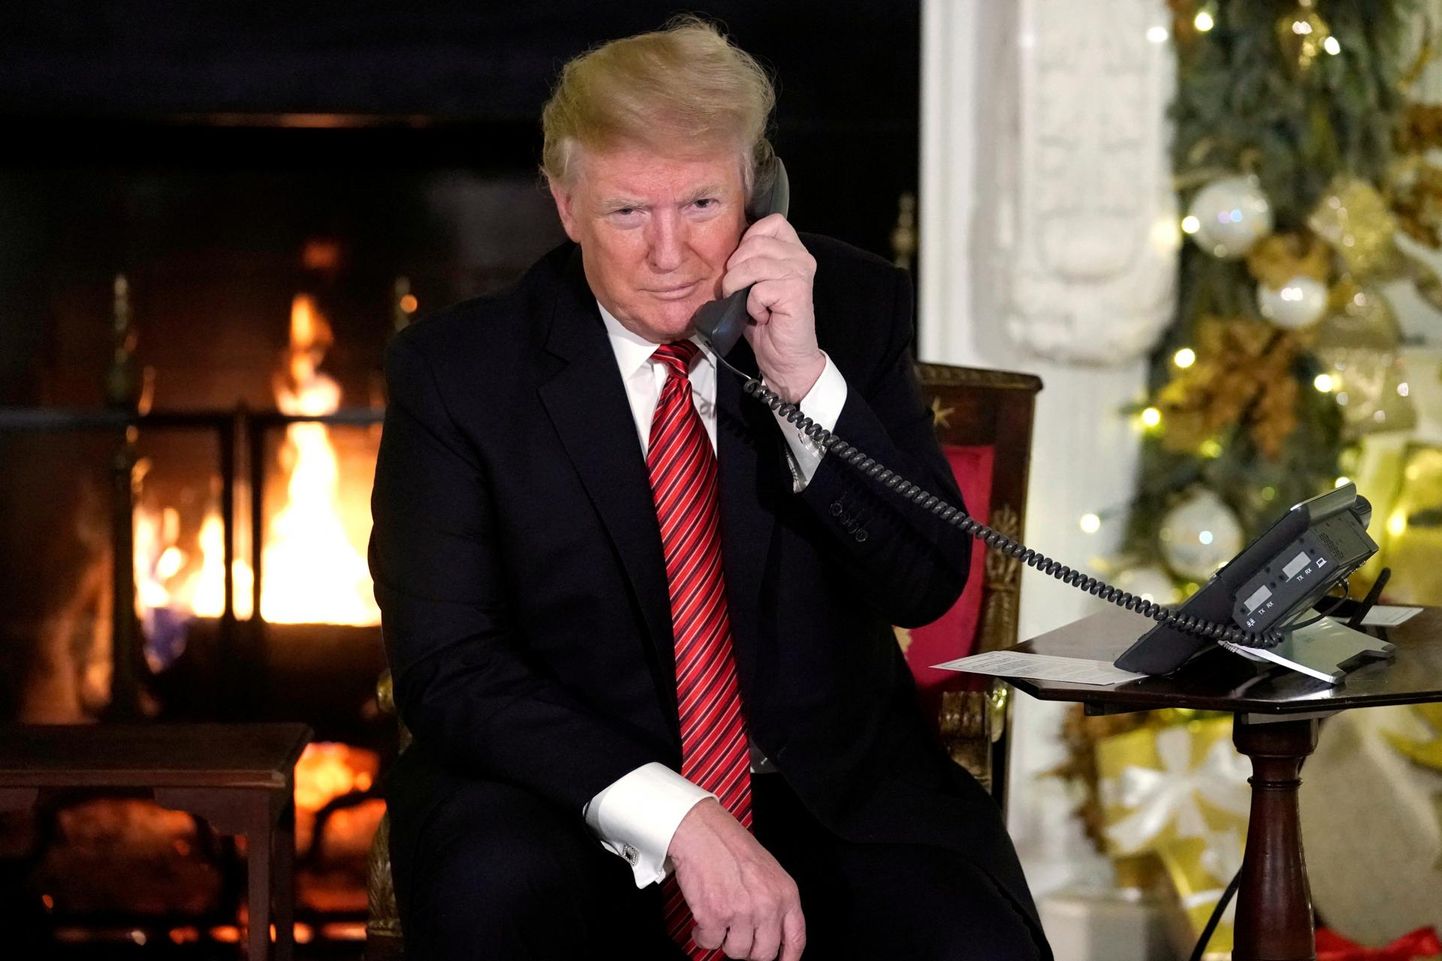 Ühendriikide president Donald Trump jõululaupäeval Valges Majas telefonitoru otsas. FOTO: Jonathan Ernst/Reuters/Scanpix